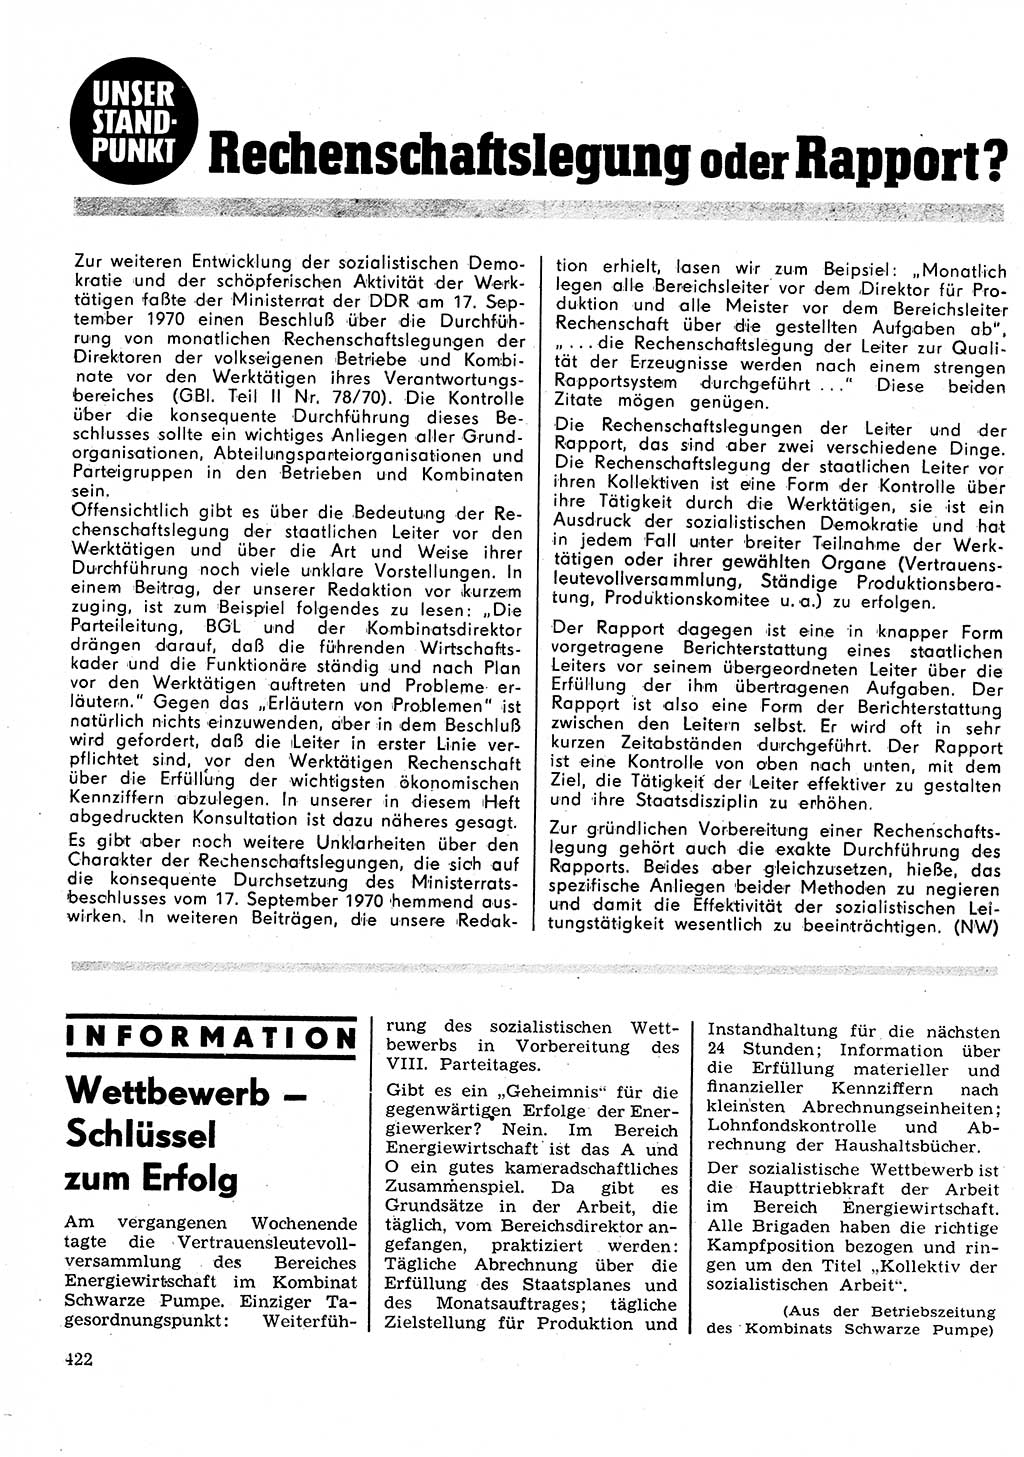 Neuer Weg (NW), Organ des Zentralkomitees (ZK) der SED (Sozialistische Einheitspartei Deutschlands) für Fragen des Parteilebens, 26. Jahrgang [Deutsche Demokratische Republik (DDR)] 1971, Seite 422 (NW ZK SED DDR 1971, S. 422)